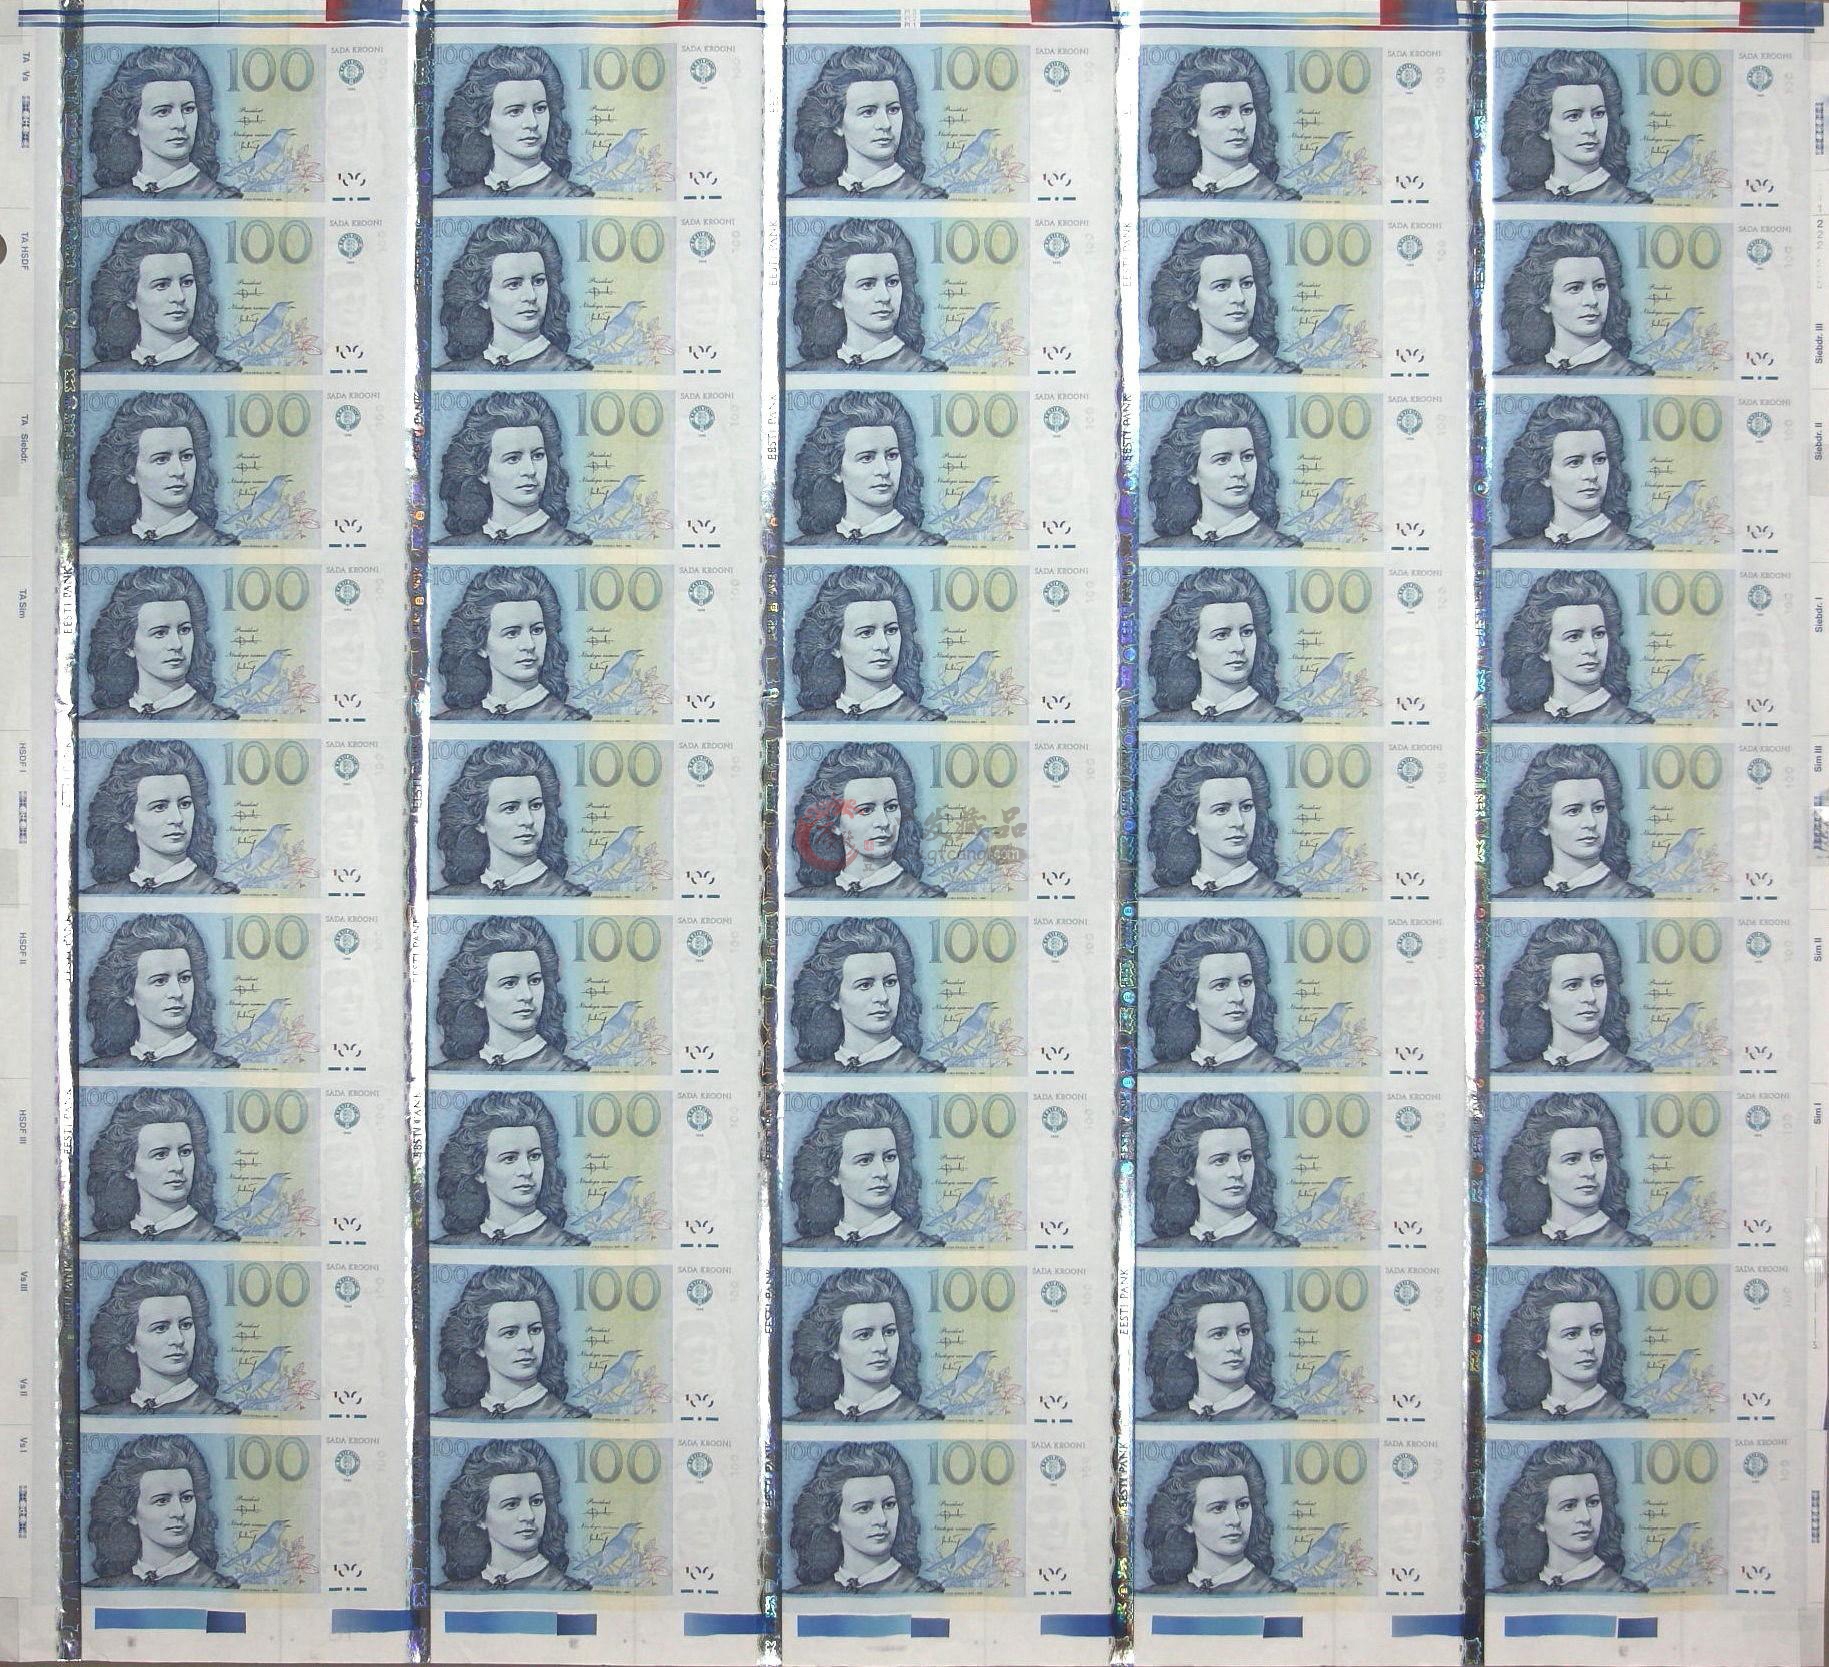 爱沙尼亚100 krooni 45连体整版钞